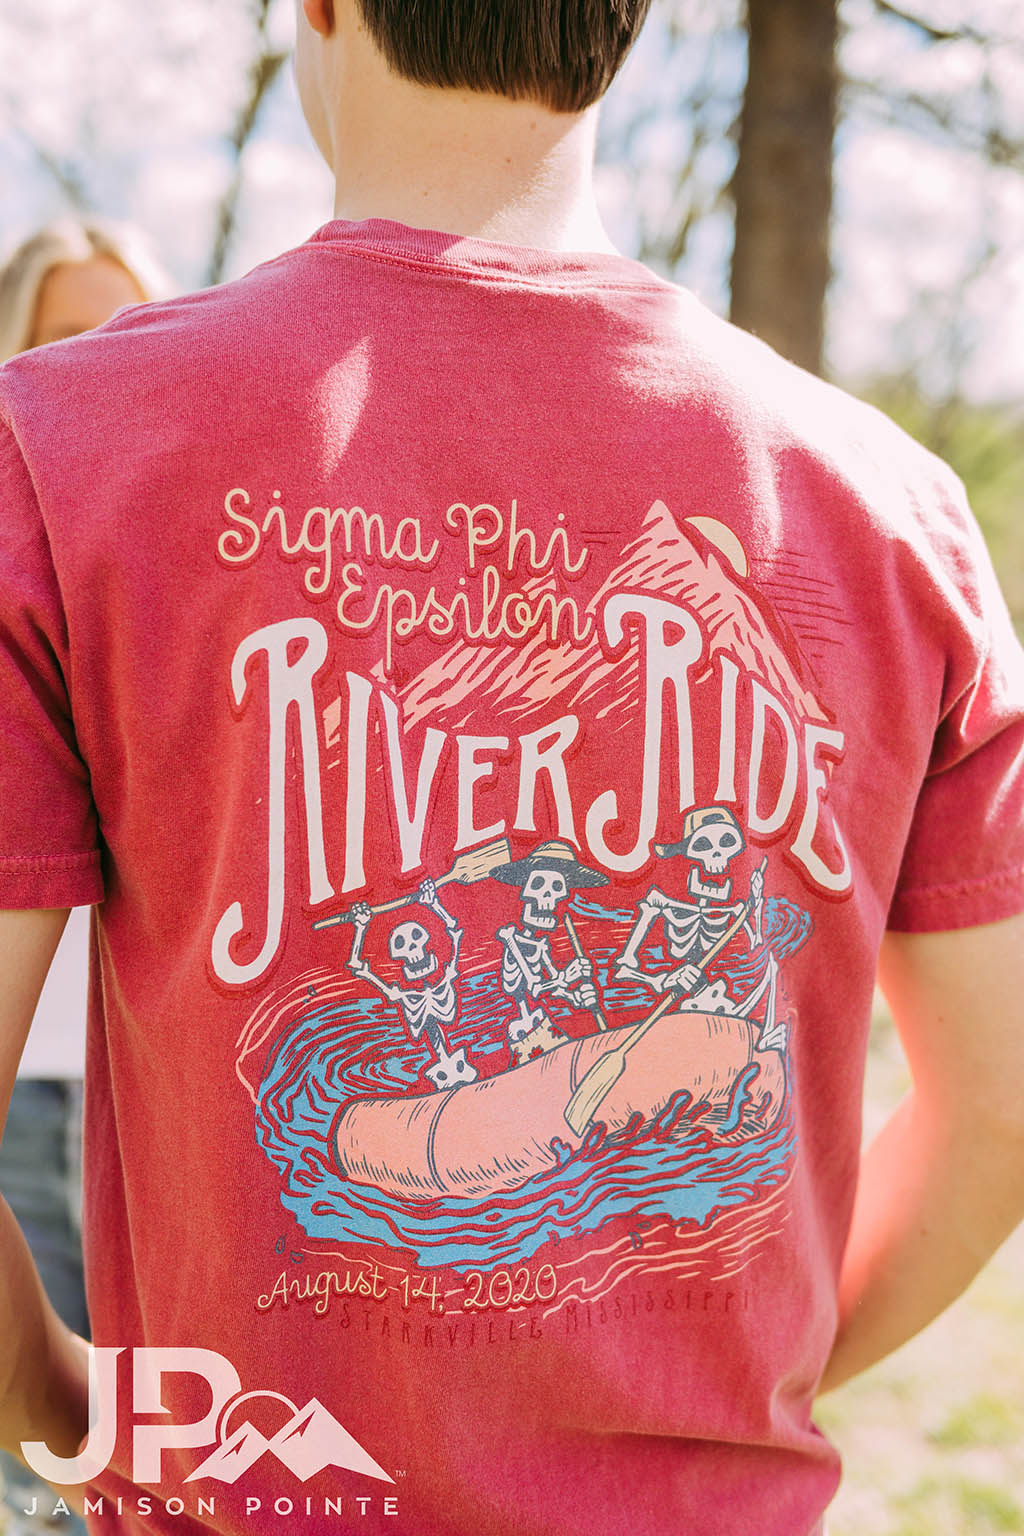 Sigma Phi Epsilon River Ride Tshirt